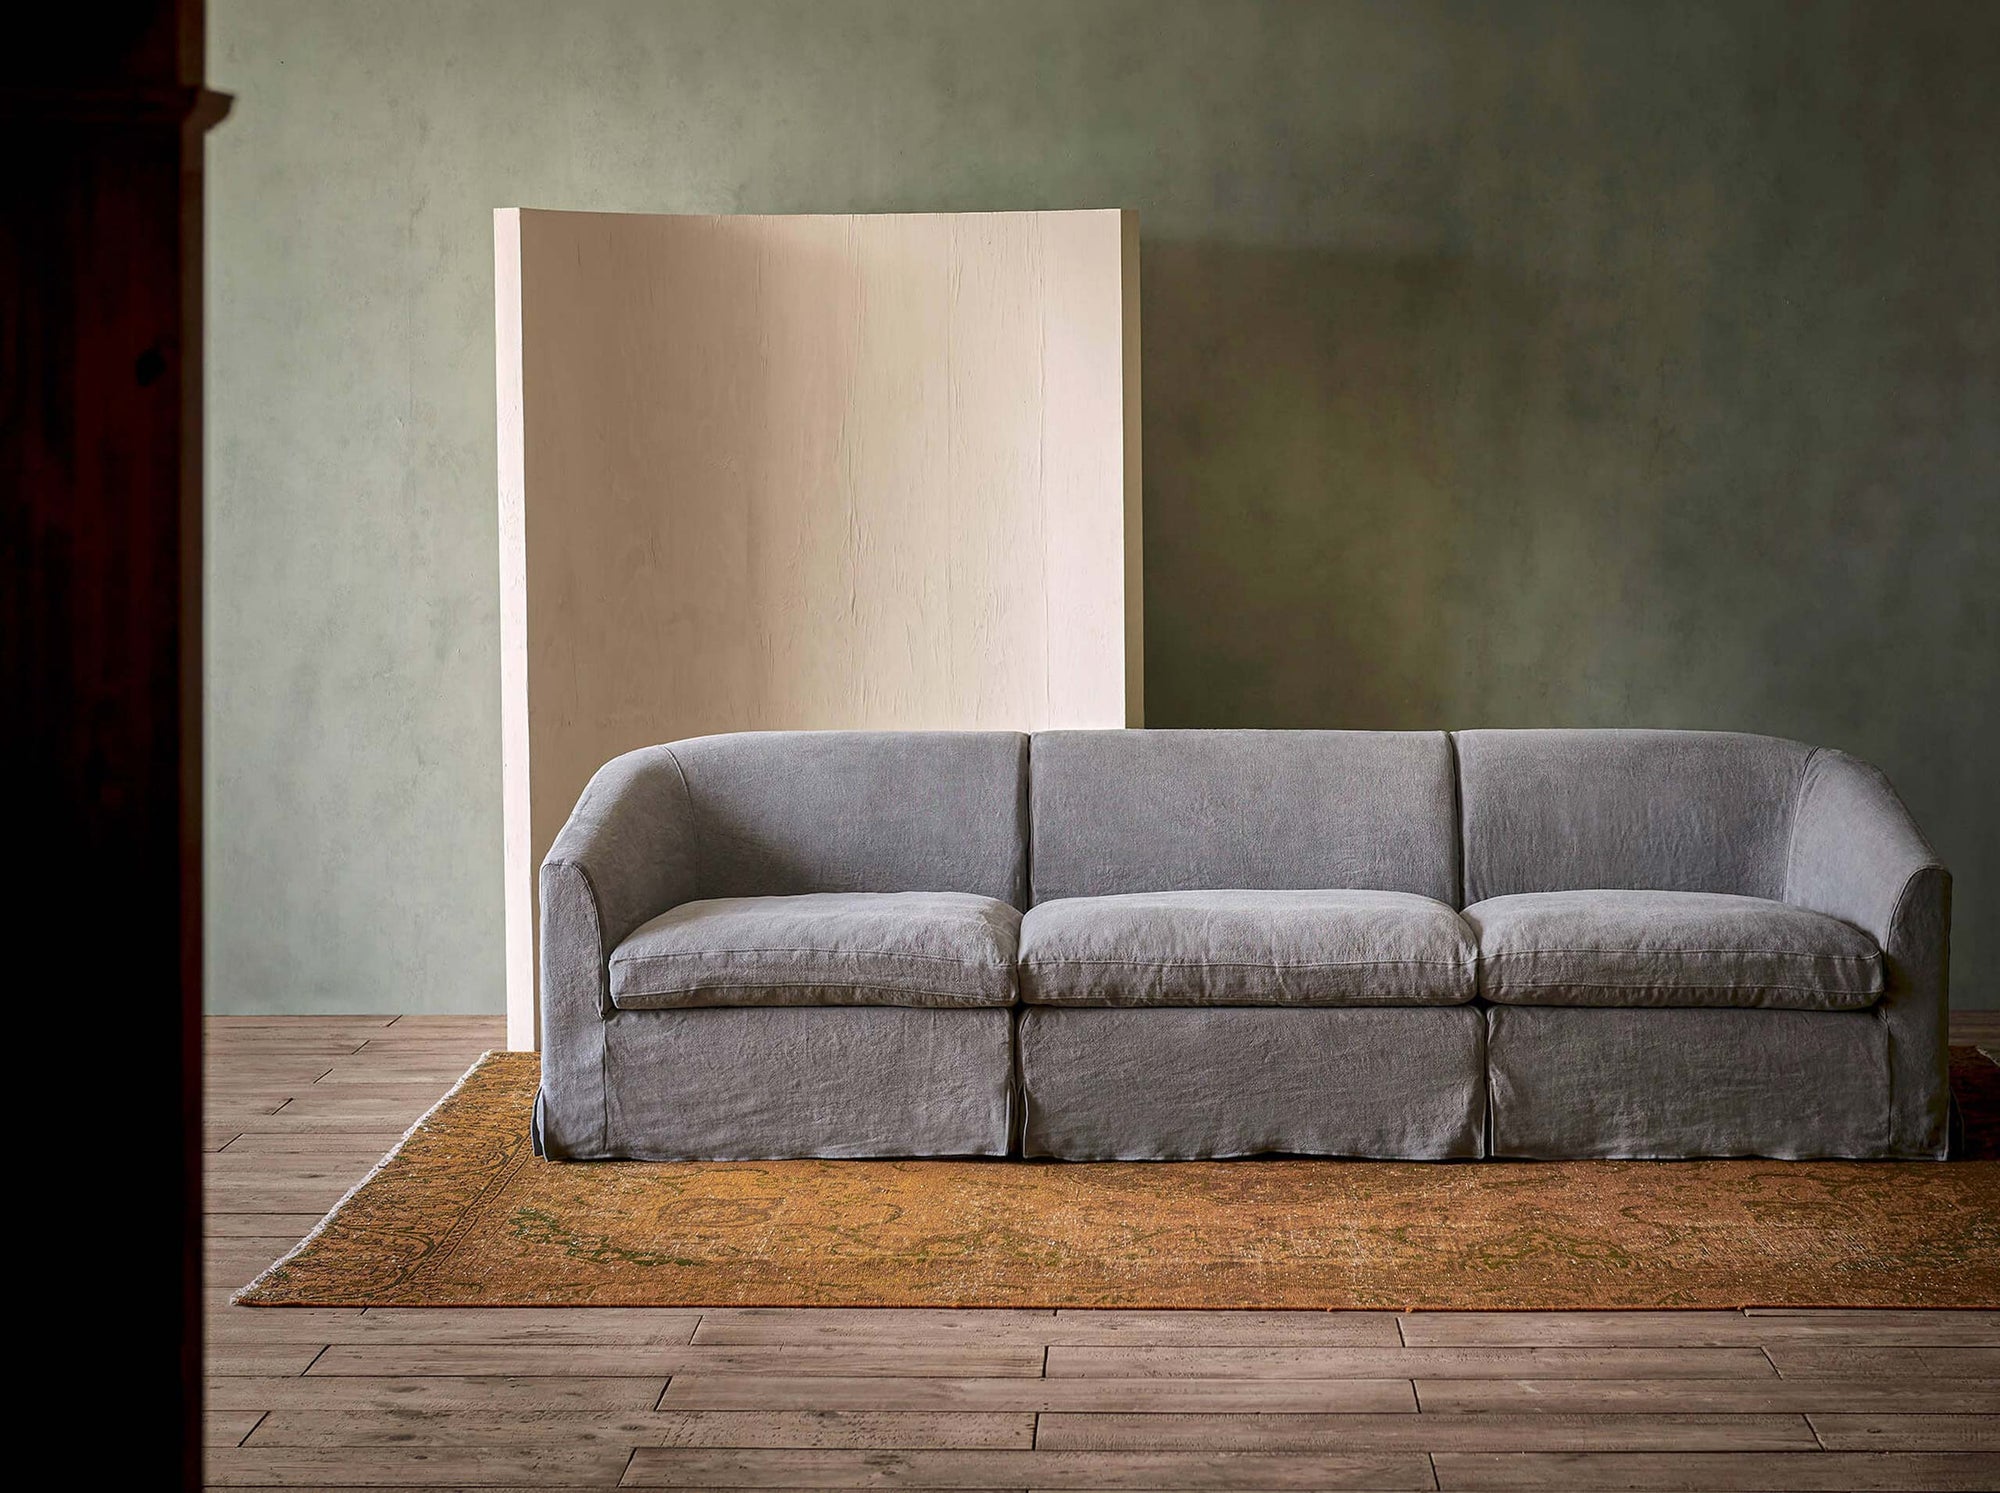 Ziki Sectional Sofa in Ink Cap, a medium cool grey Light Weight Linen